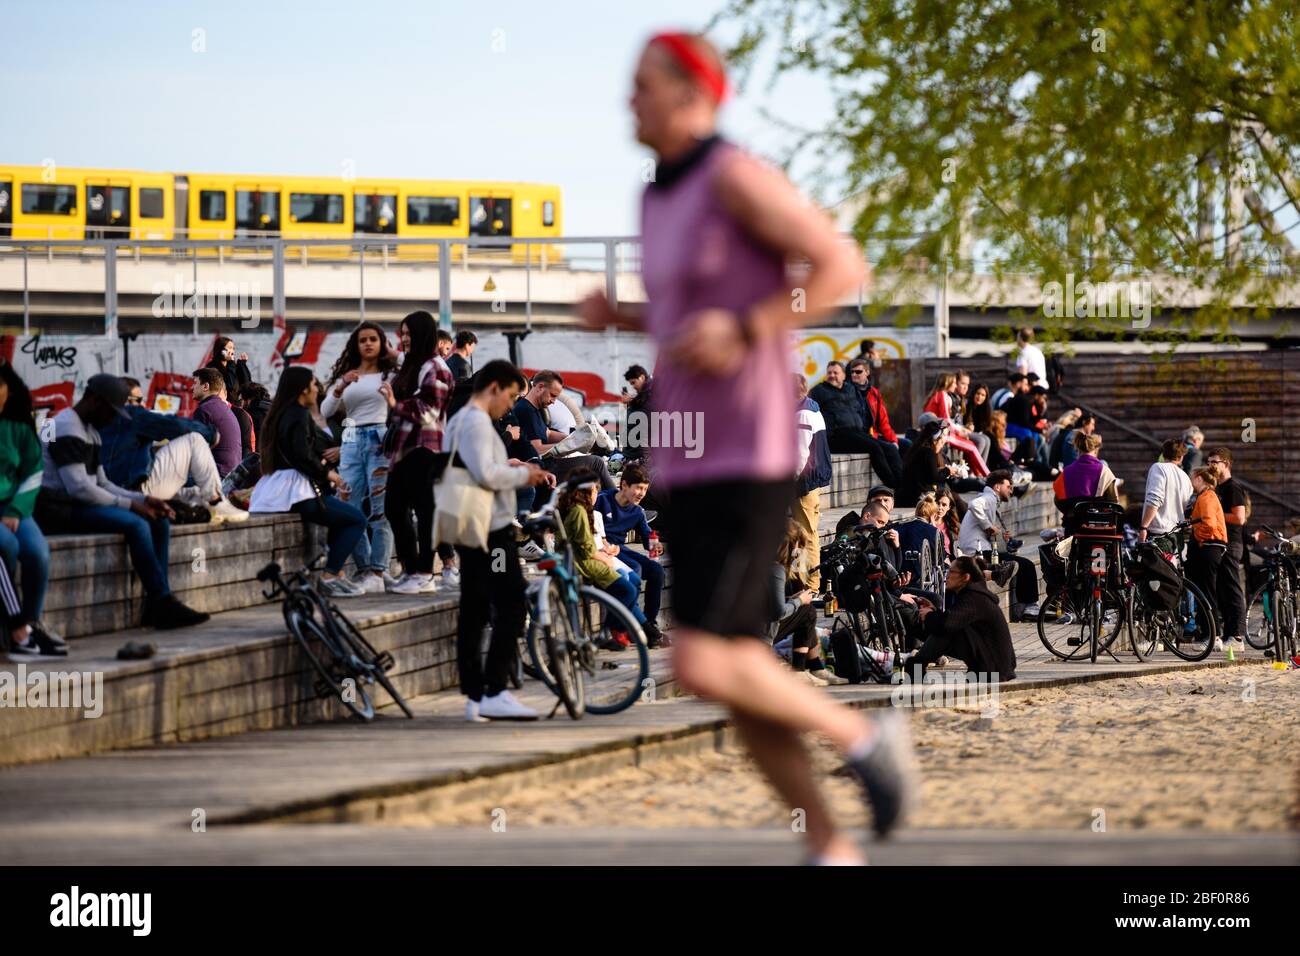 16 avril 2020: Des foules de personnes s'assoient sur des marches en bois dans le parc Gleisdreieckpark de Berlin malgré l'interdiction de contact. Les personnes vivant dans la ville de Berlin doivent rester dans leurs appartements ou dans leur logement habituel pour contenir le coronavirus, les réunions de plus de 2 personnes sont interdites, les gens sont invités à garder une distance minimale. Crédit: Jan Scheunert/ZUMA Wire/Alay Live News Banque D'Images